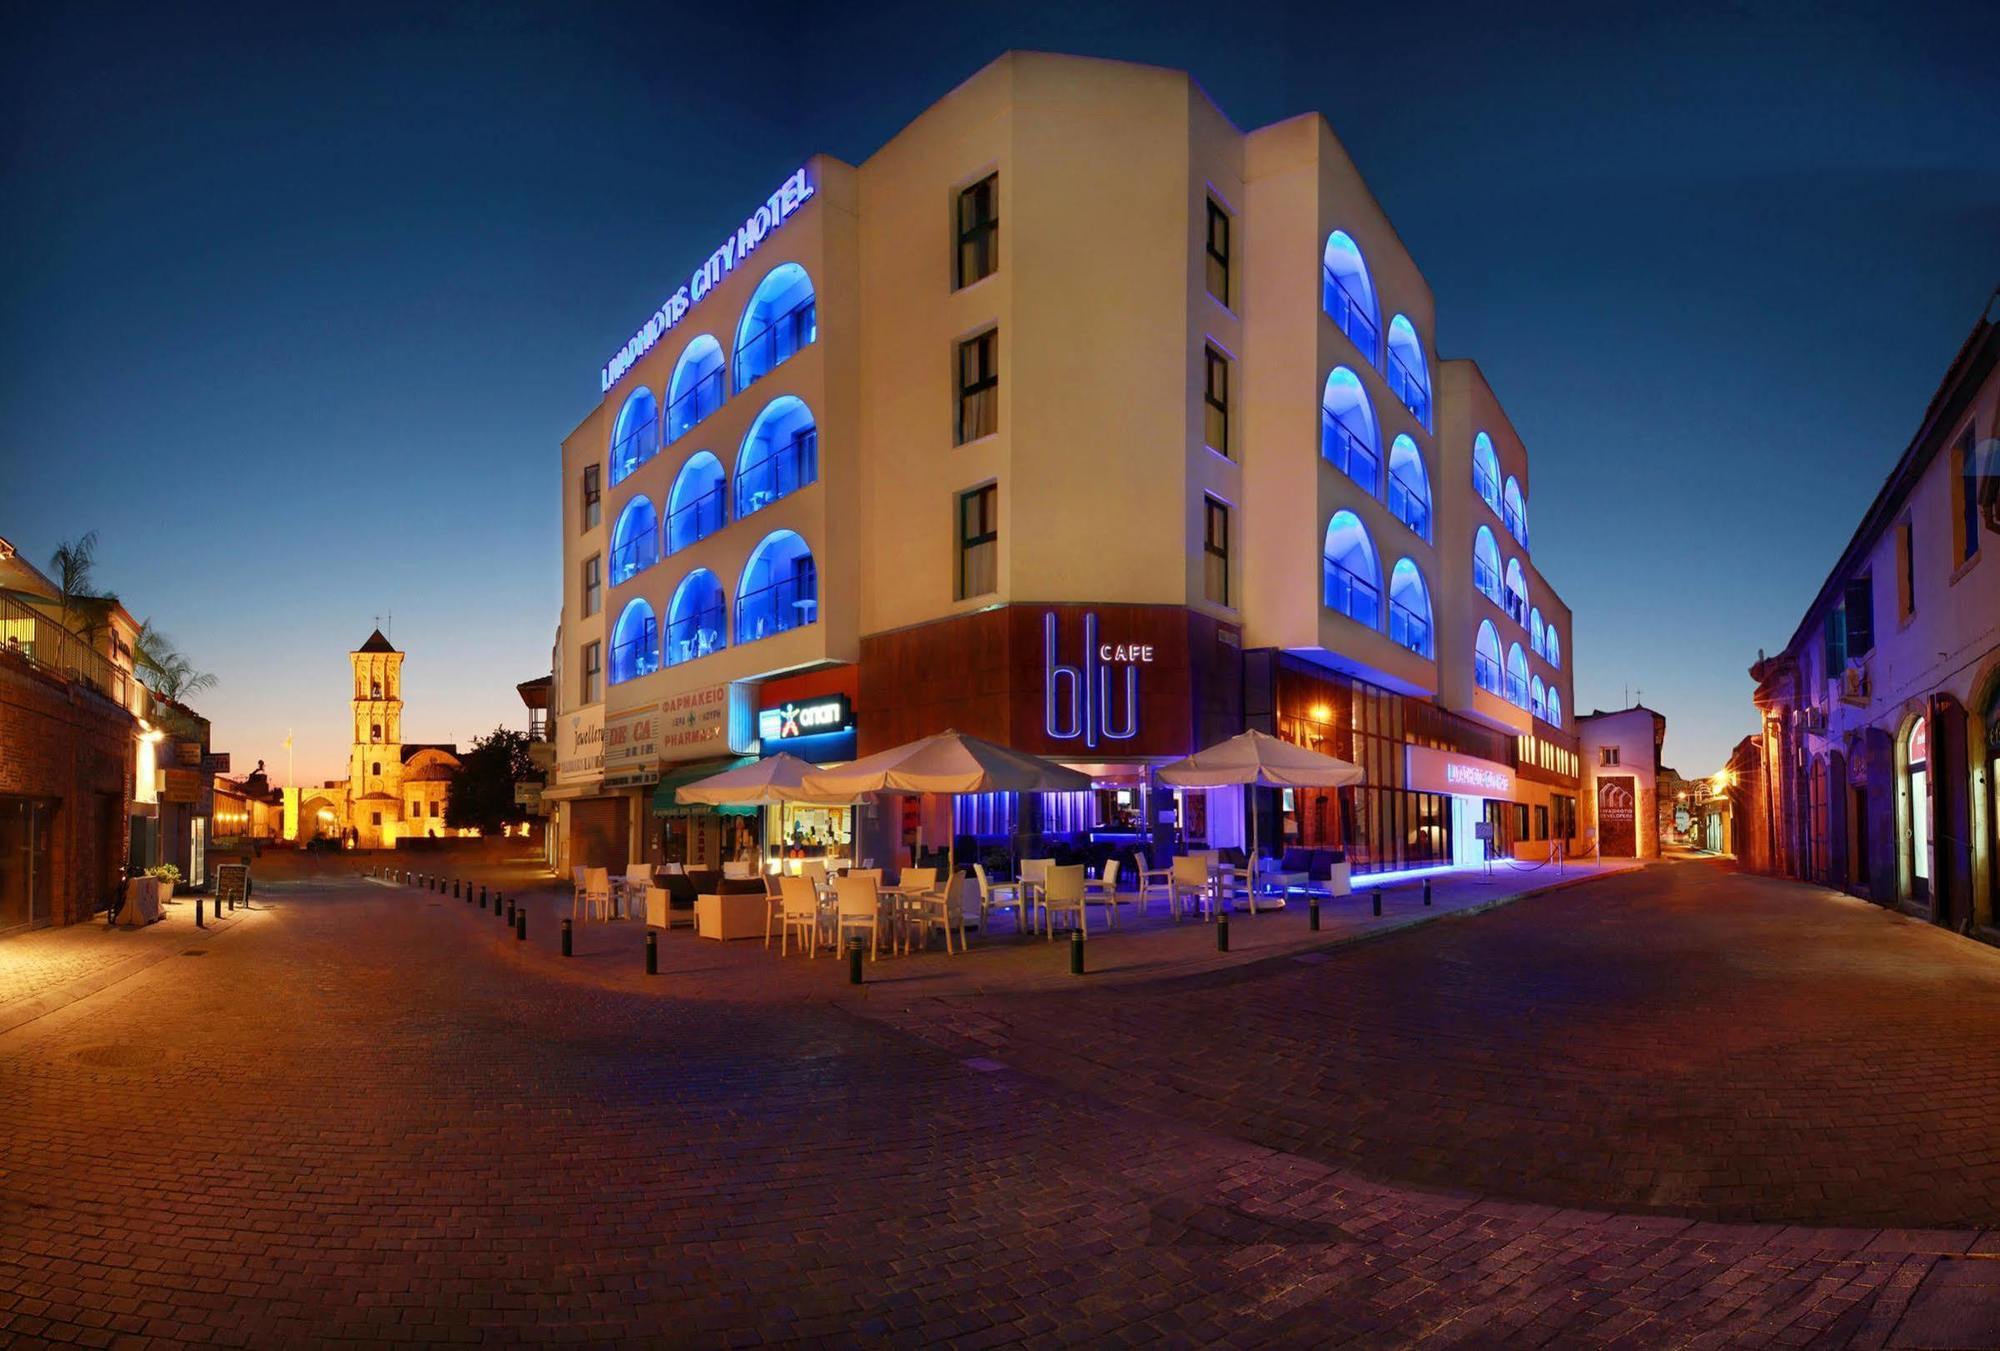 Livadhiotis City Hotel Larnaca Exteriör bild